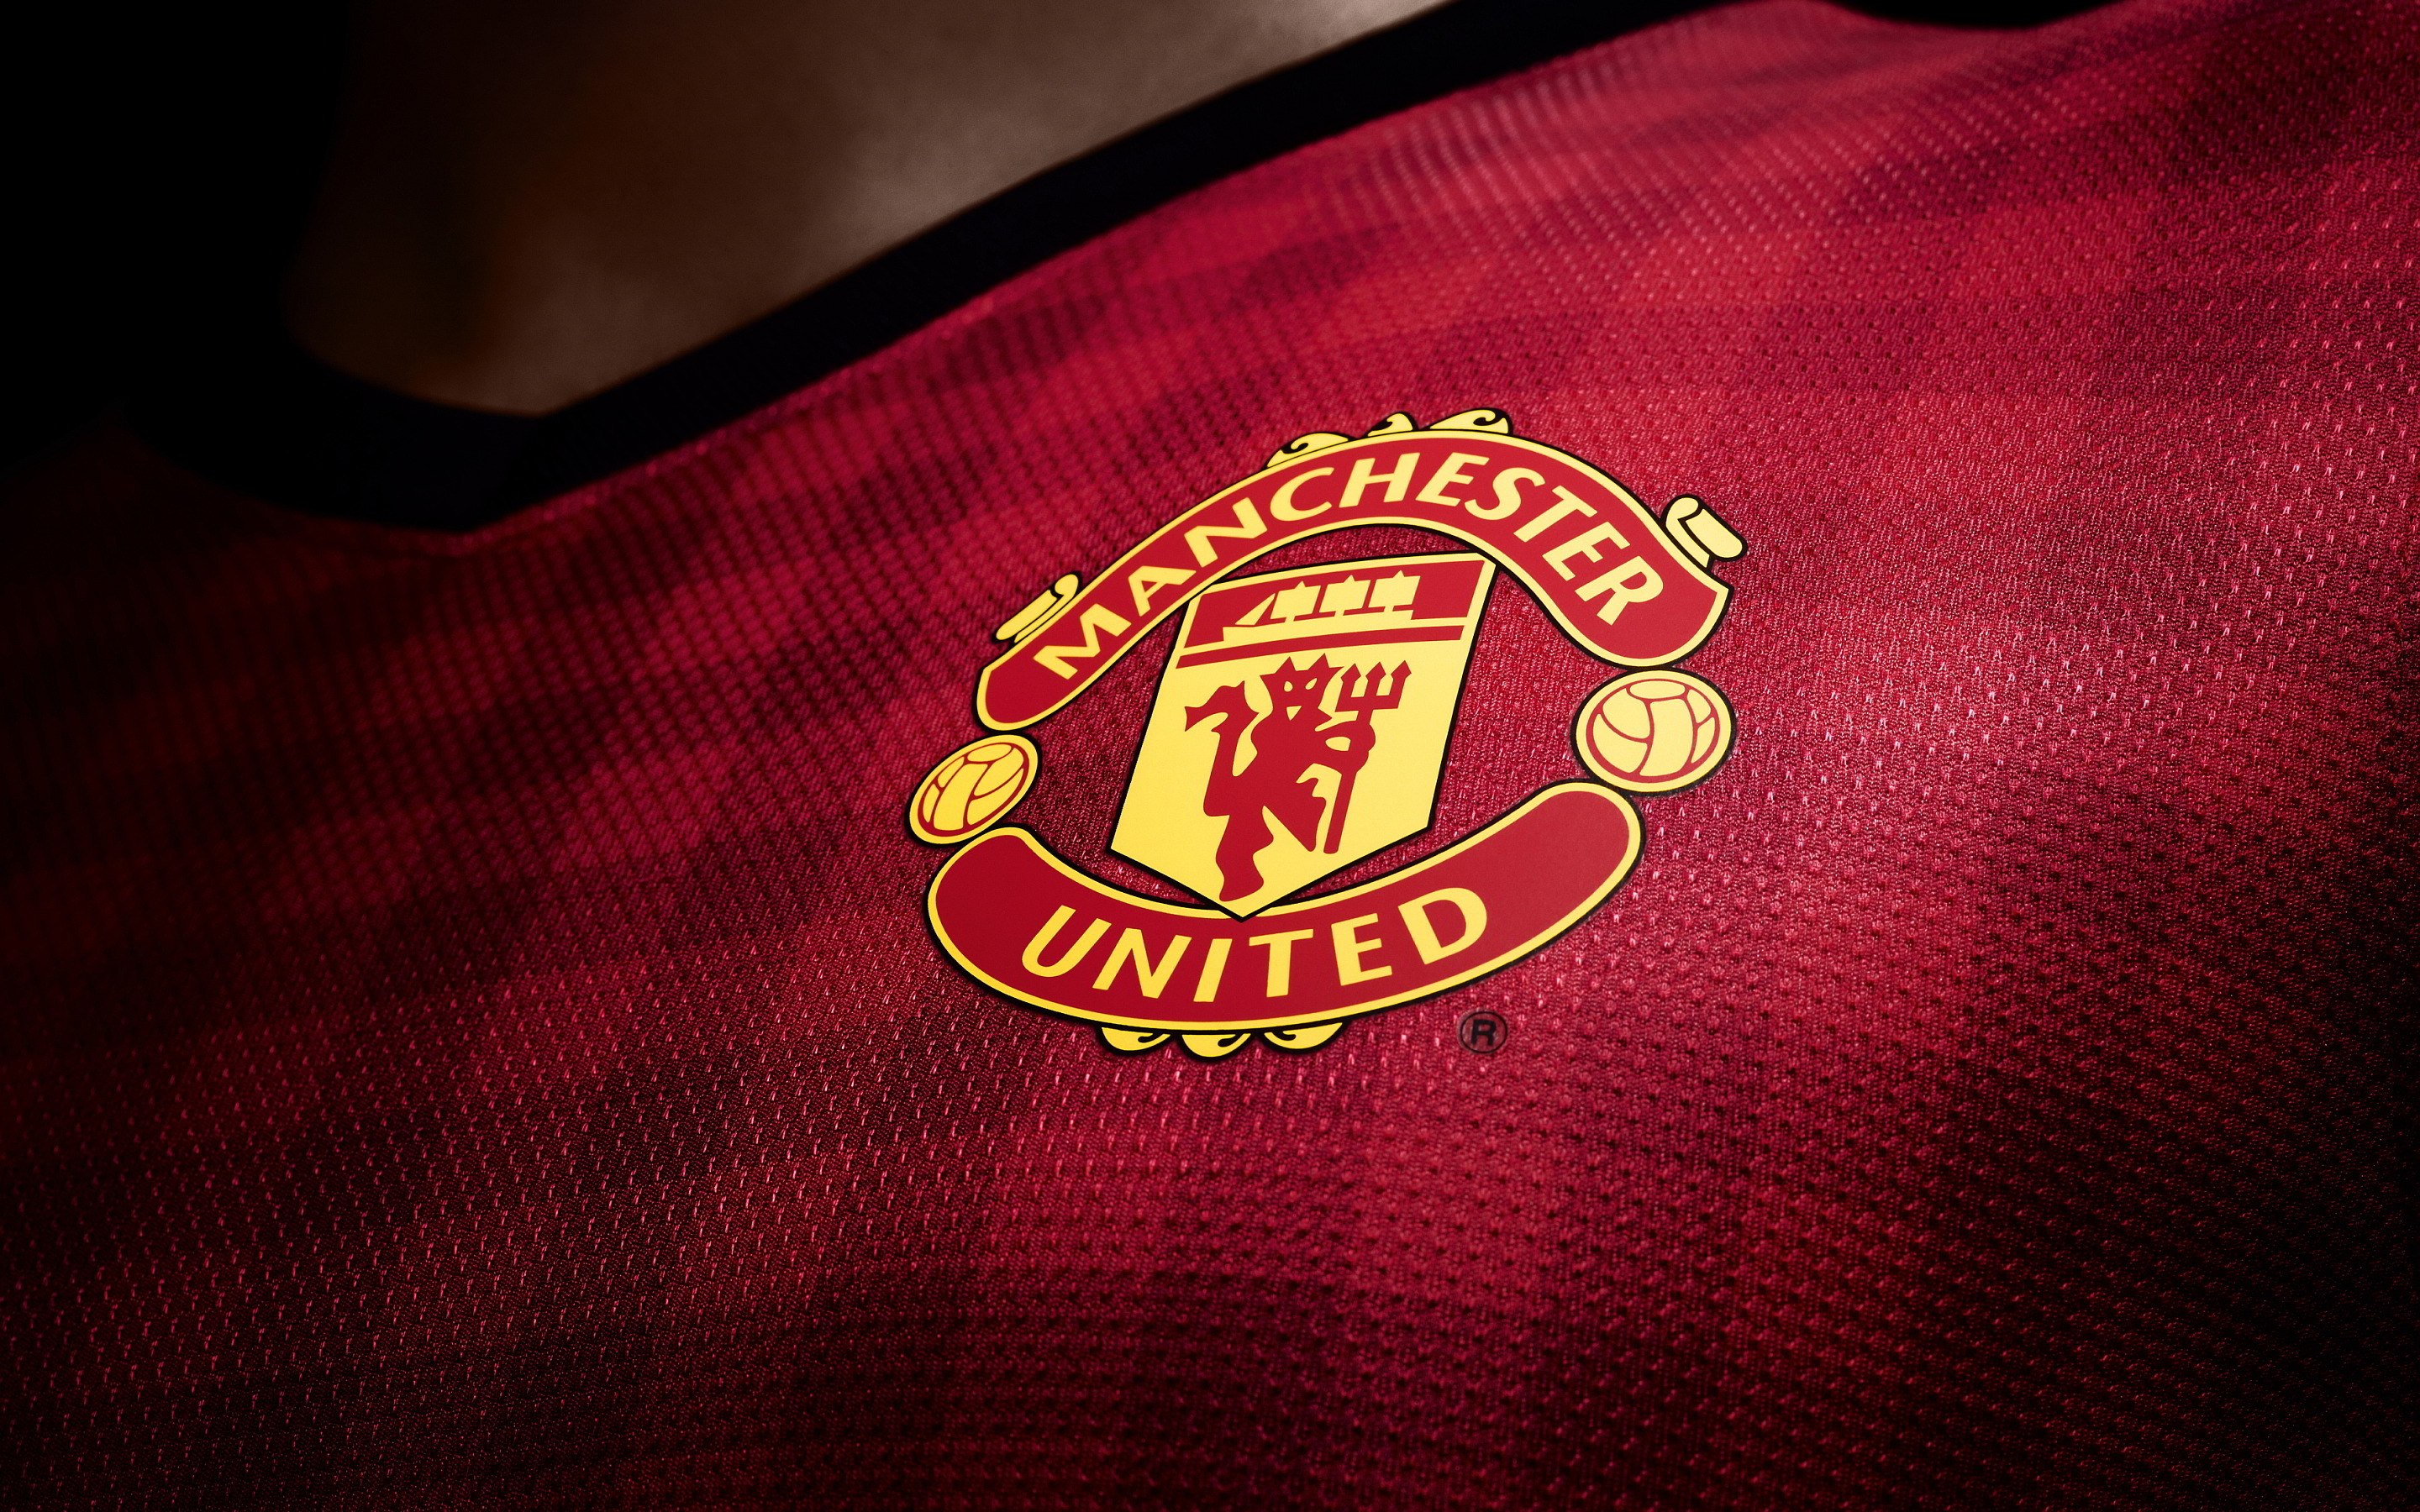 manchester-united-logo.jpg